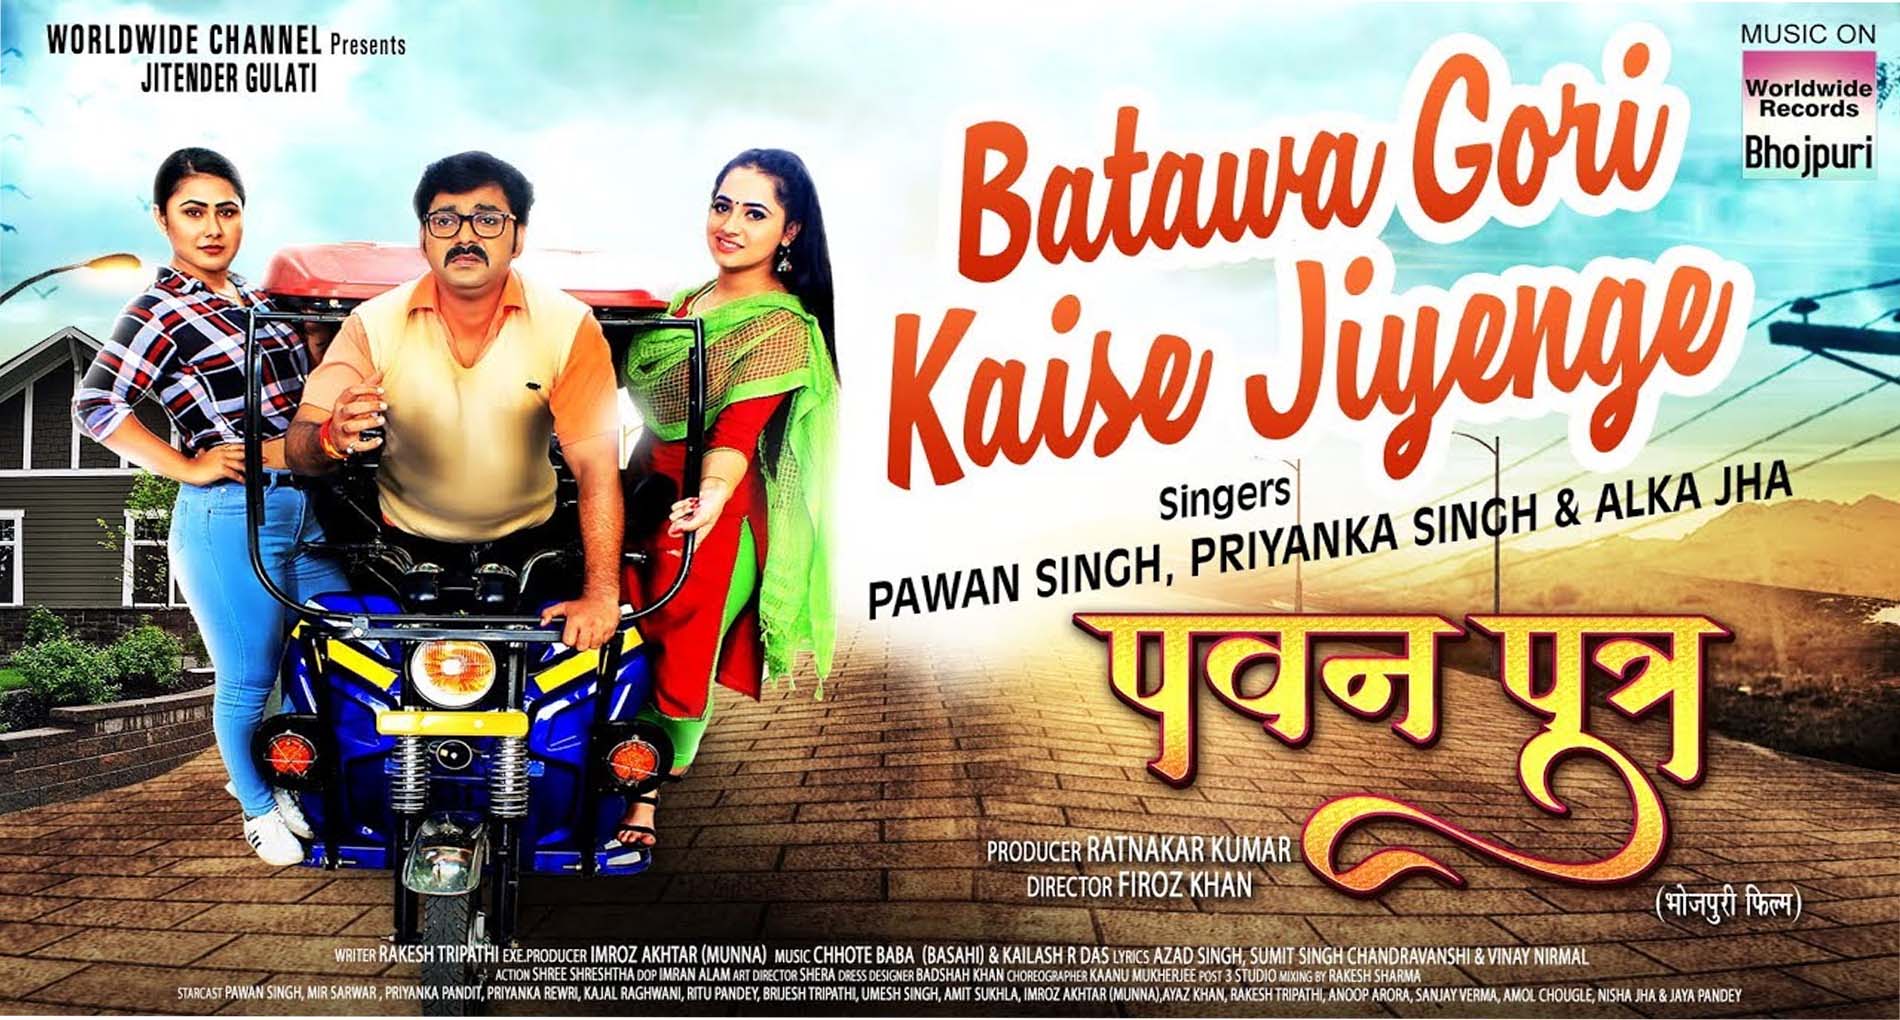 Pawan singh Bhojpuri Song: पवन सिंह के नए गाने ‘बतावा गोरी कैसे जिएंगे’ ने मचाया तहलका! देखें वीडियो